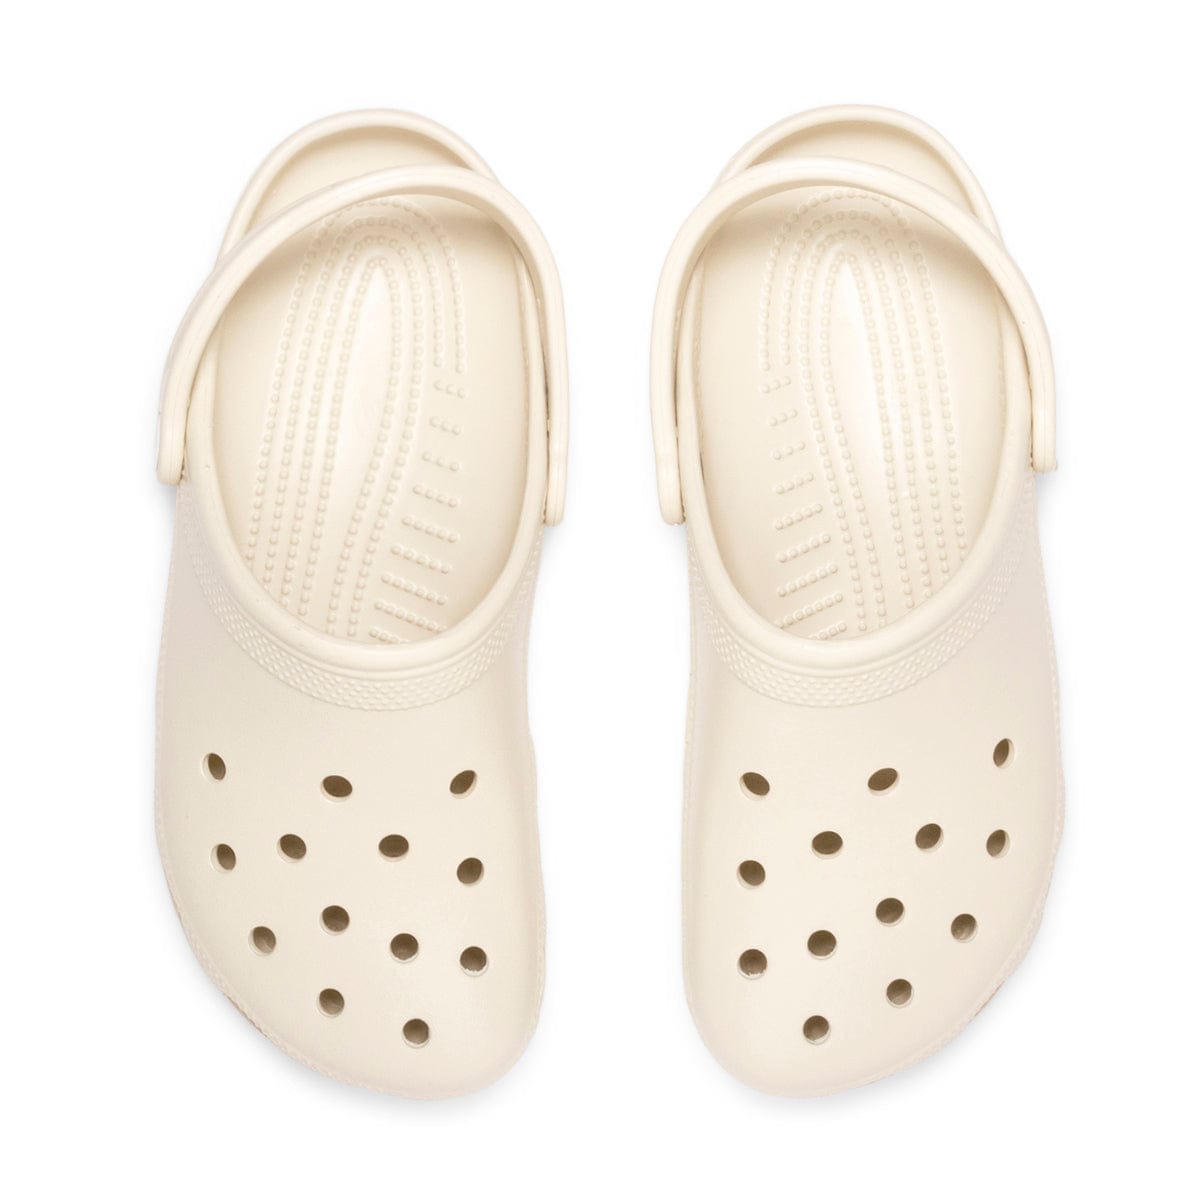 Crocs Sandals CLASSIC CLOG